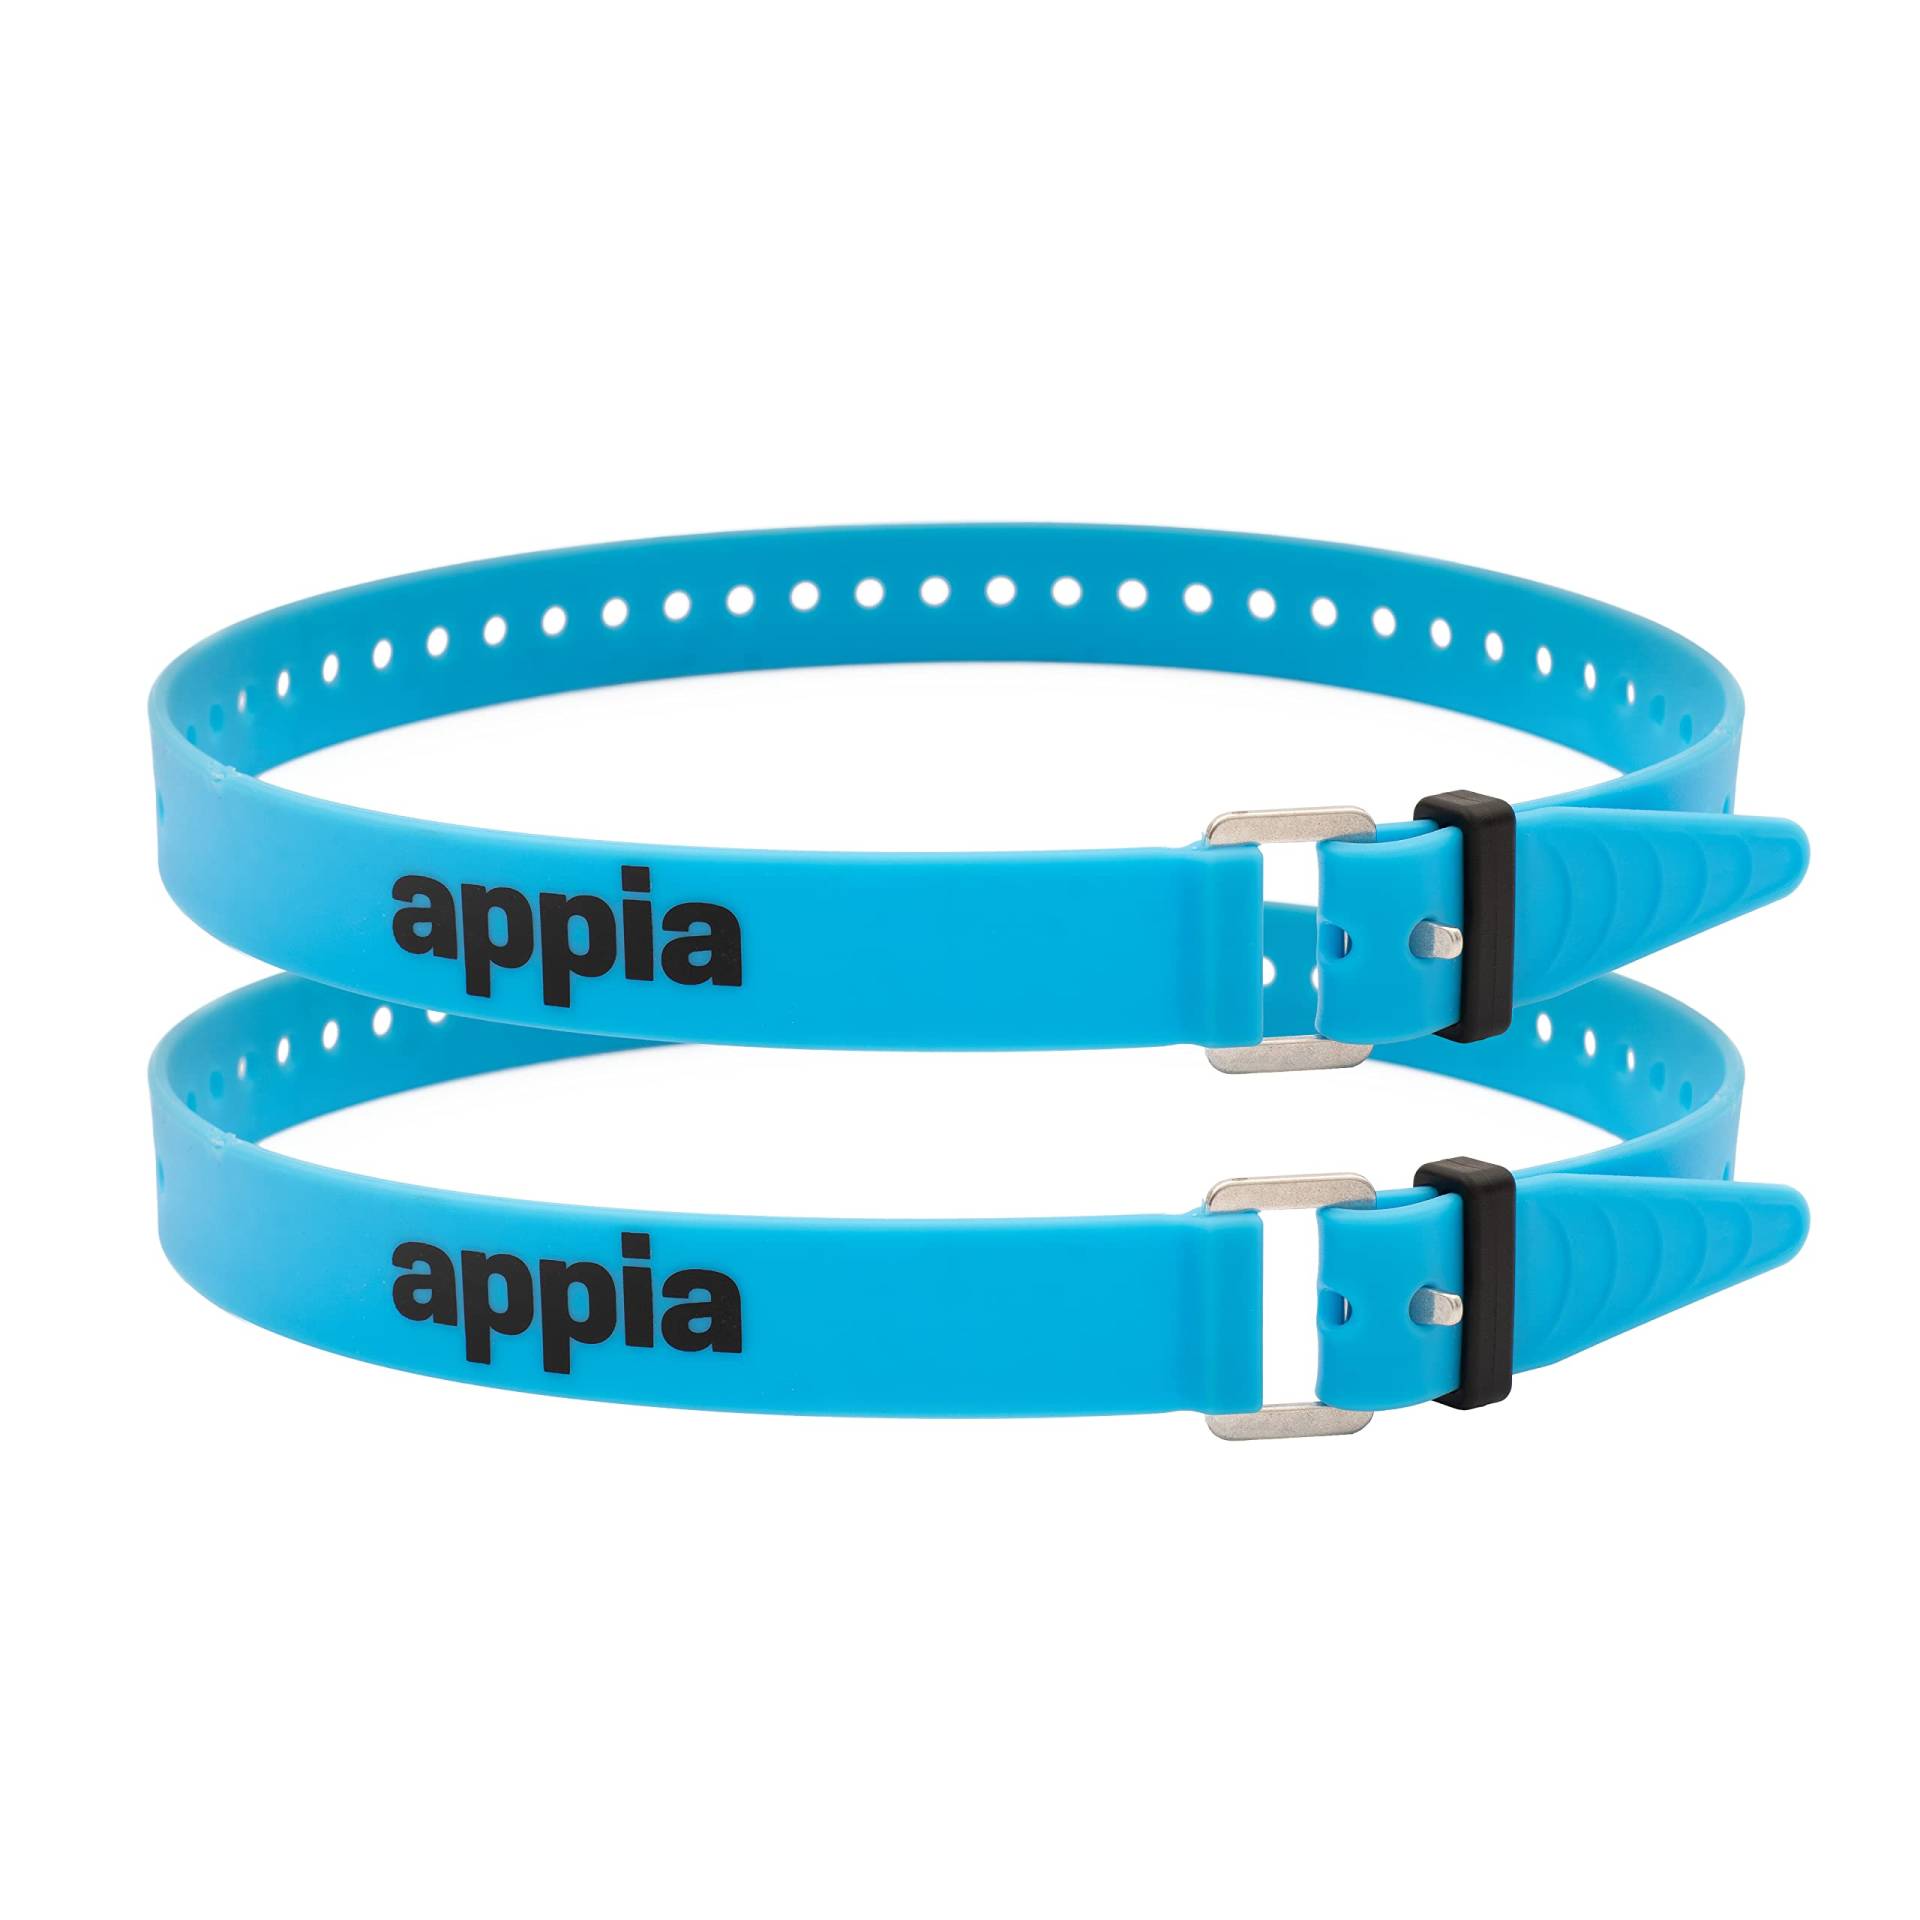 Appia Straps - Spanngurte 65cm Blau (2er Pack) inkl. Strap-Keeper für Fahrrad, Ski, Bikepacking, Camping, Heimwerken aus TPU mit rostfreier Aluminium-Schnalle von appia